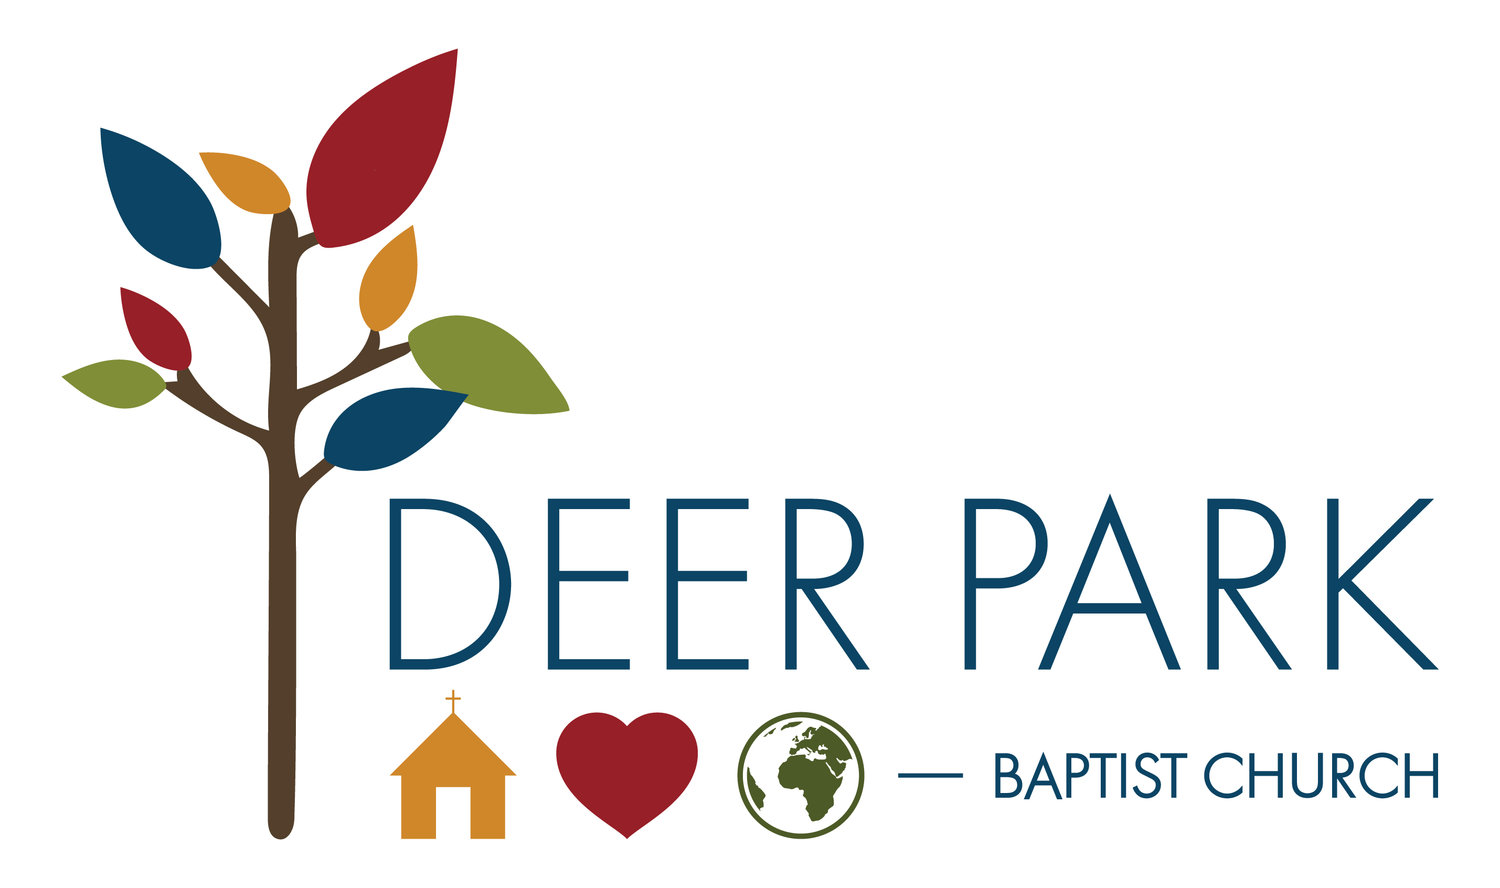 Deer Park Baptist Church